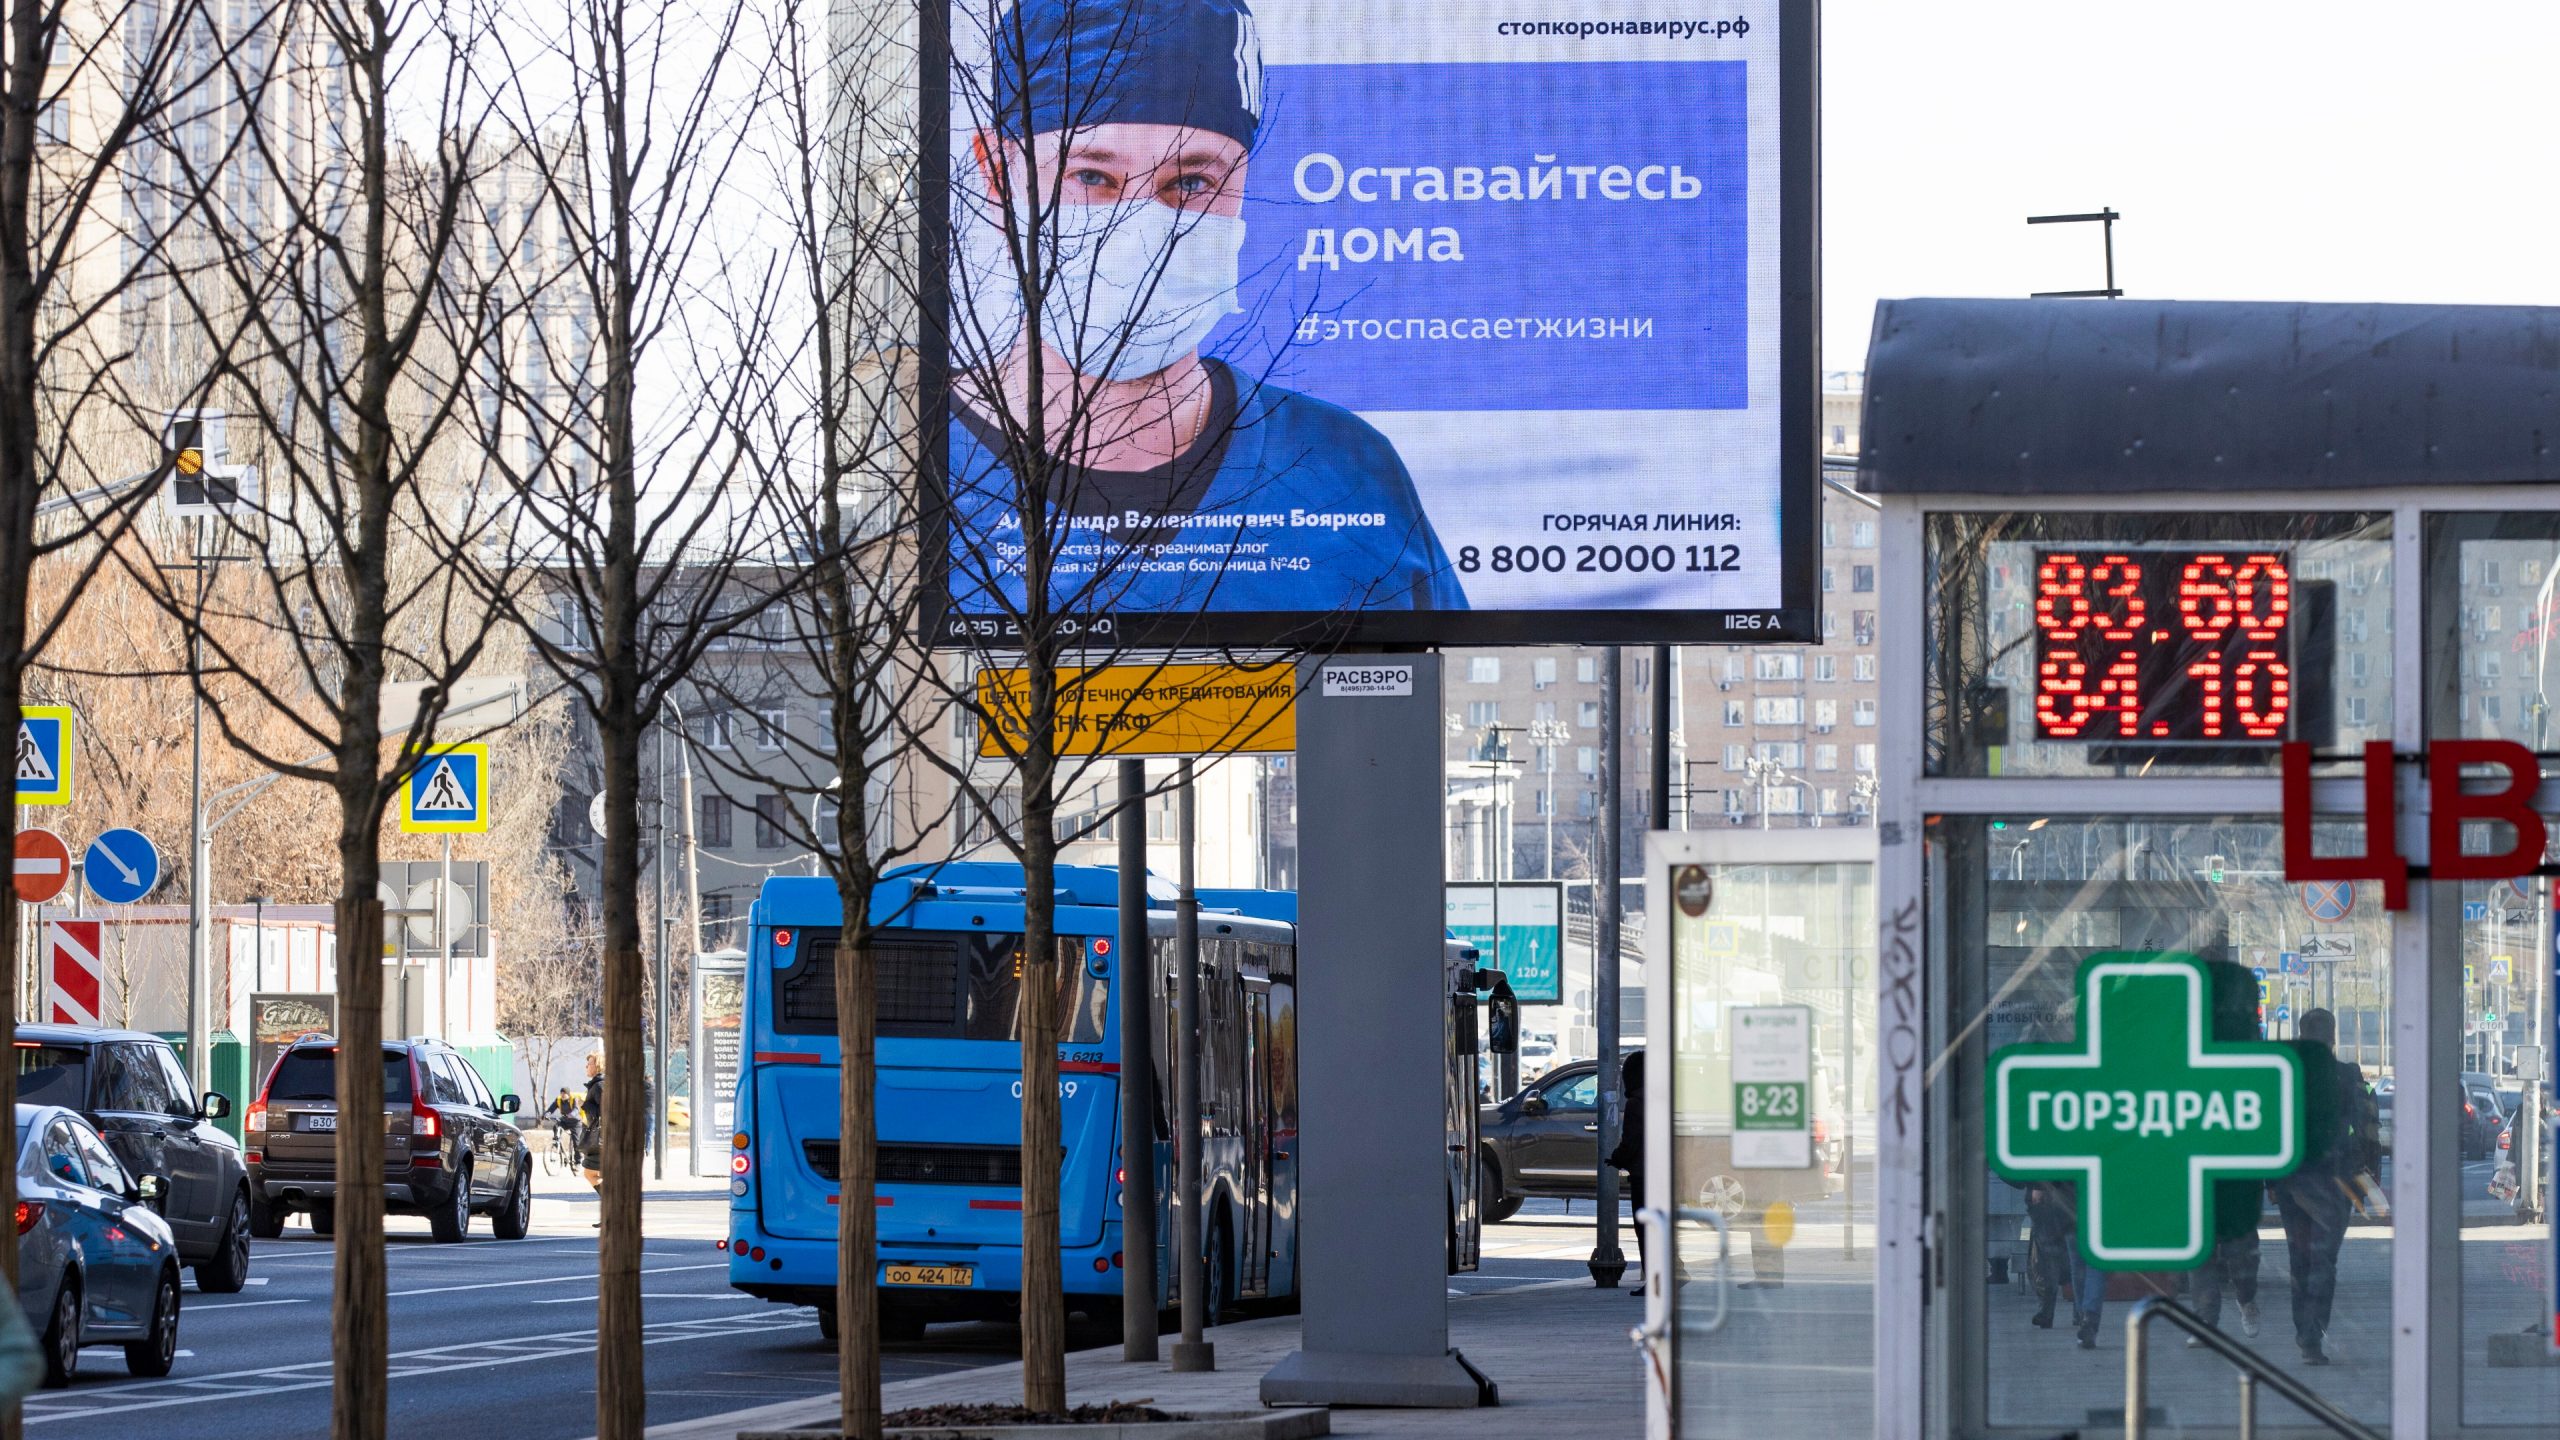 Najveći broj zaraženih korona virusom na dnevnom nivou u Rusiji, ukupno preko 200.000 pozitivnih 1